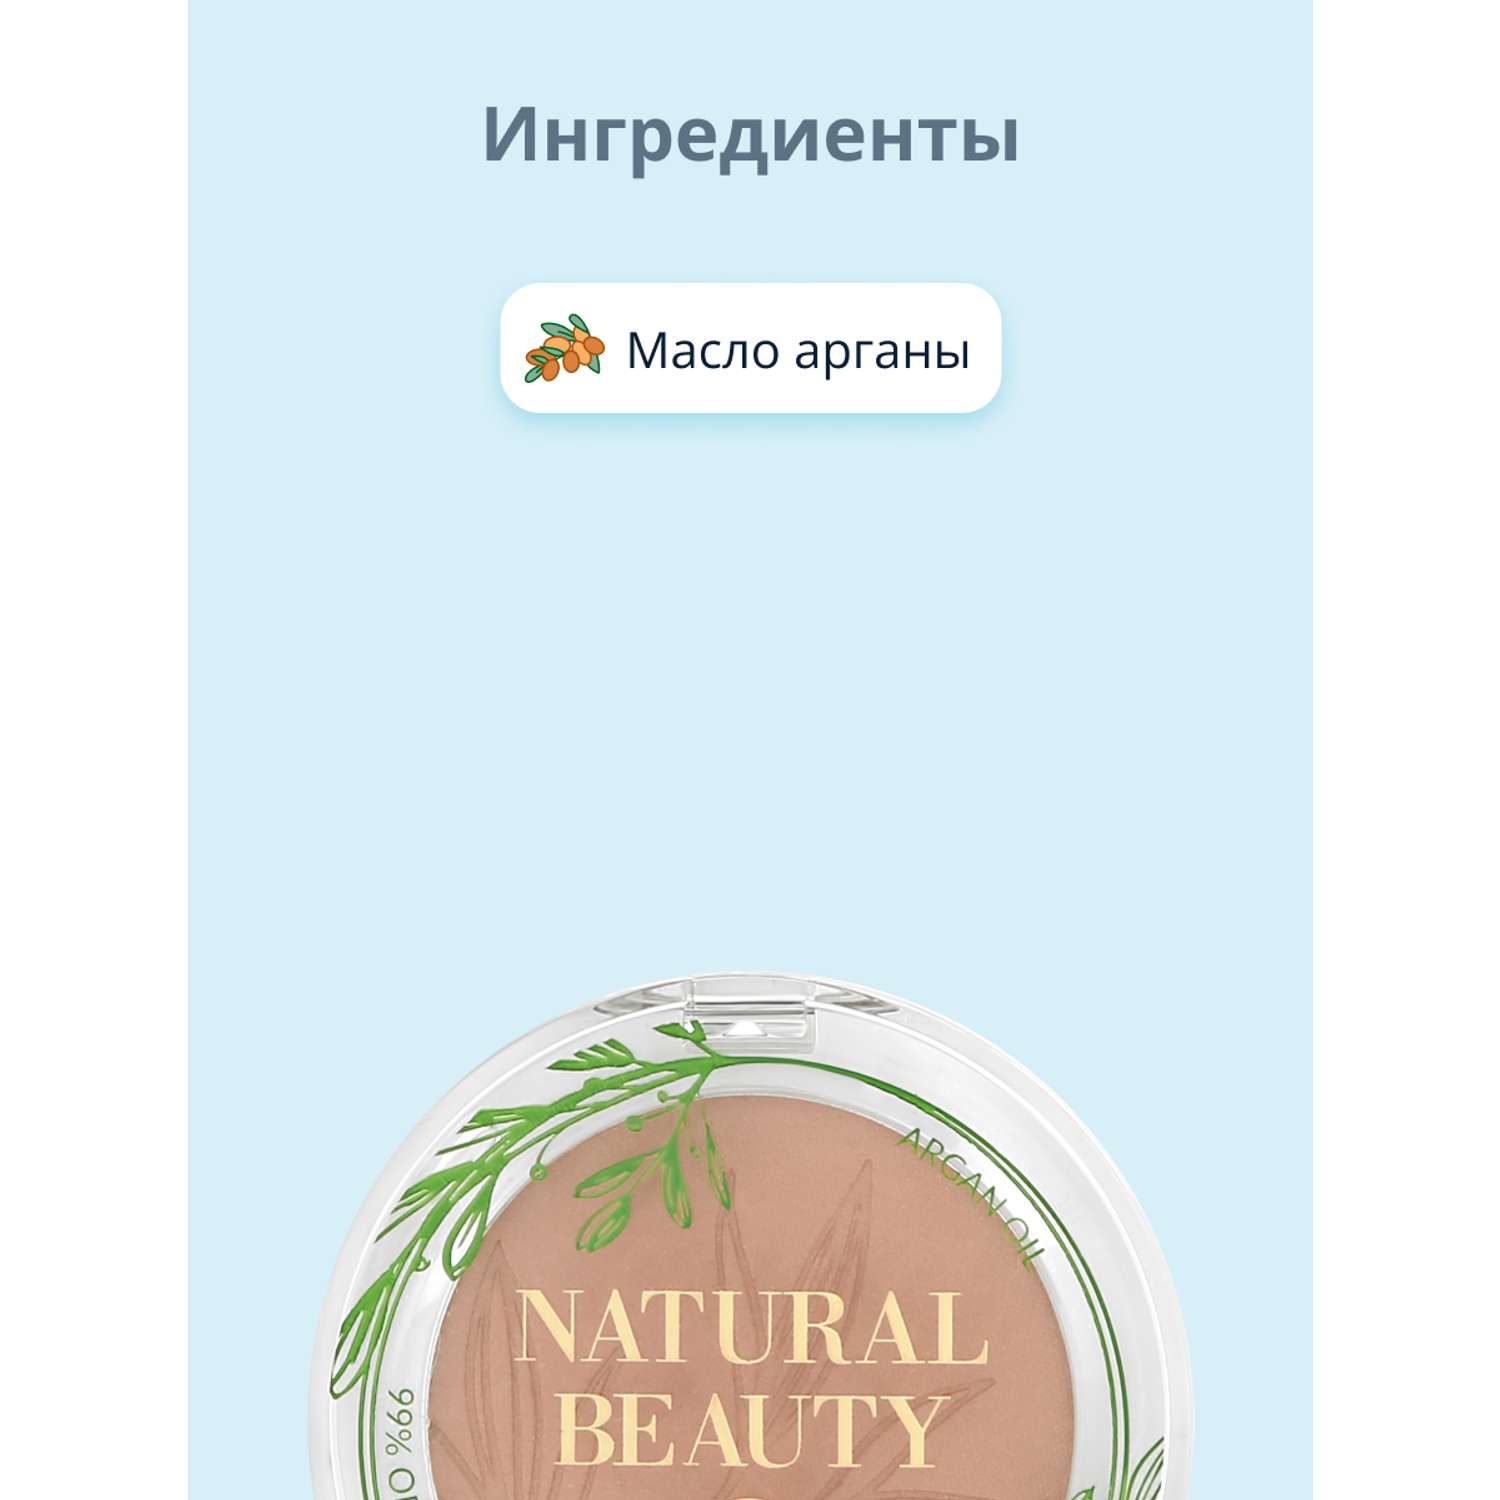 Румяна Bell Natural beauty blush тон pure mauve 99% натуральных ингредиентов - фото 2